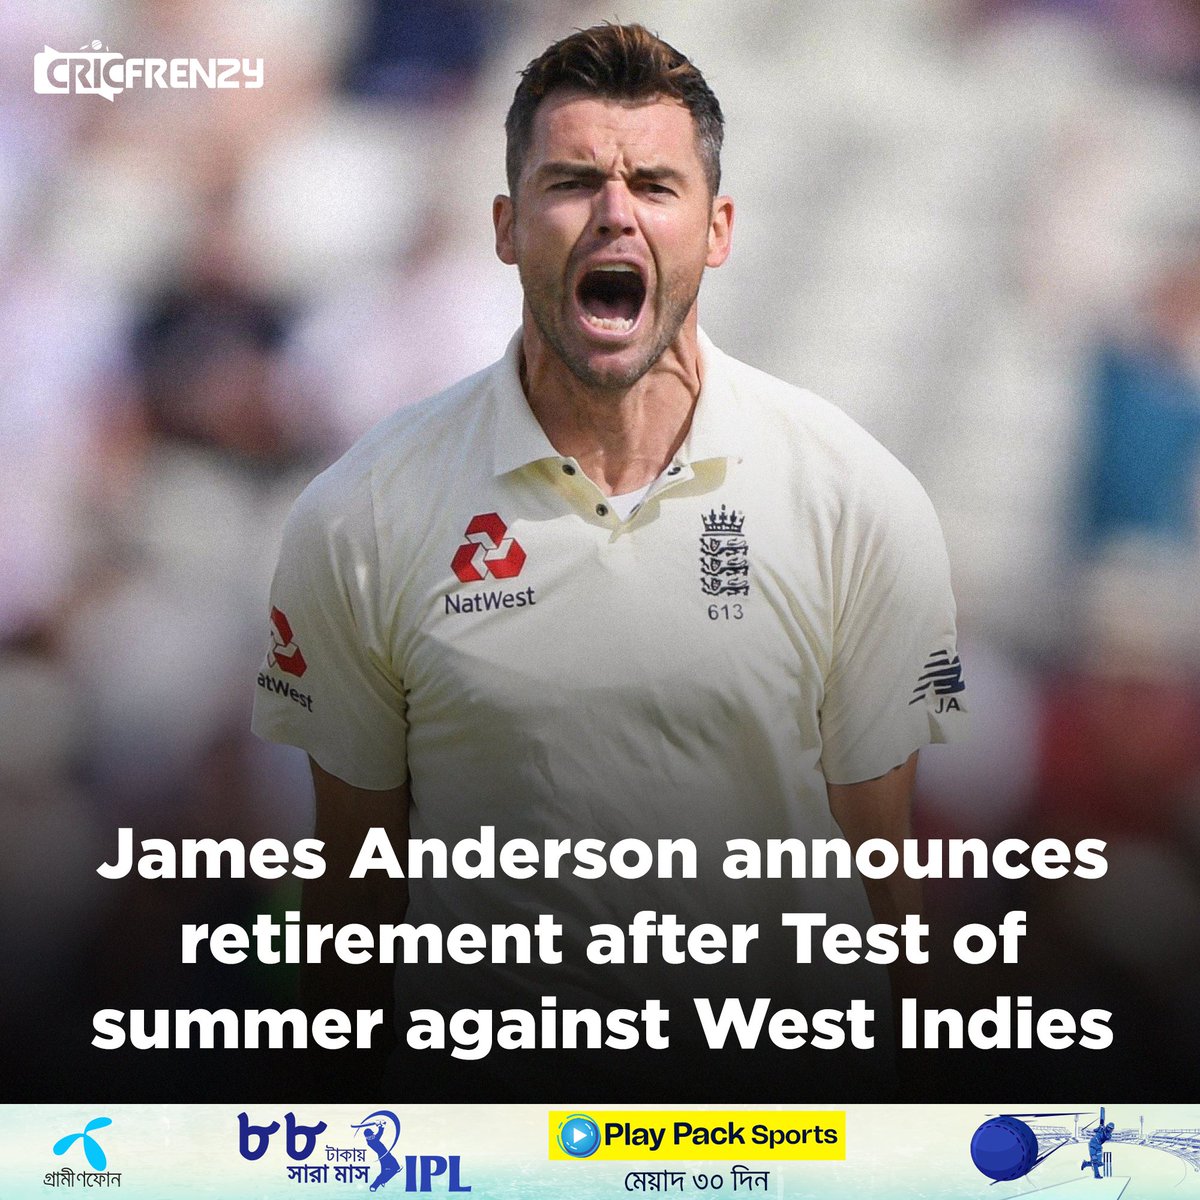 লর্ডসে ওয়েস্ট ইন্ডিজের বিপক্ষে ইংল্যান্ডের প্রথম টেস্টের পর জেমস অ্যান্ডারসন আন্তর্জাতিক ক্রিকেট থেকে অবসর নেওয়ার ঘোষণা দিয়েছেন। #JamesAnderson